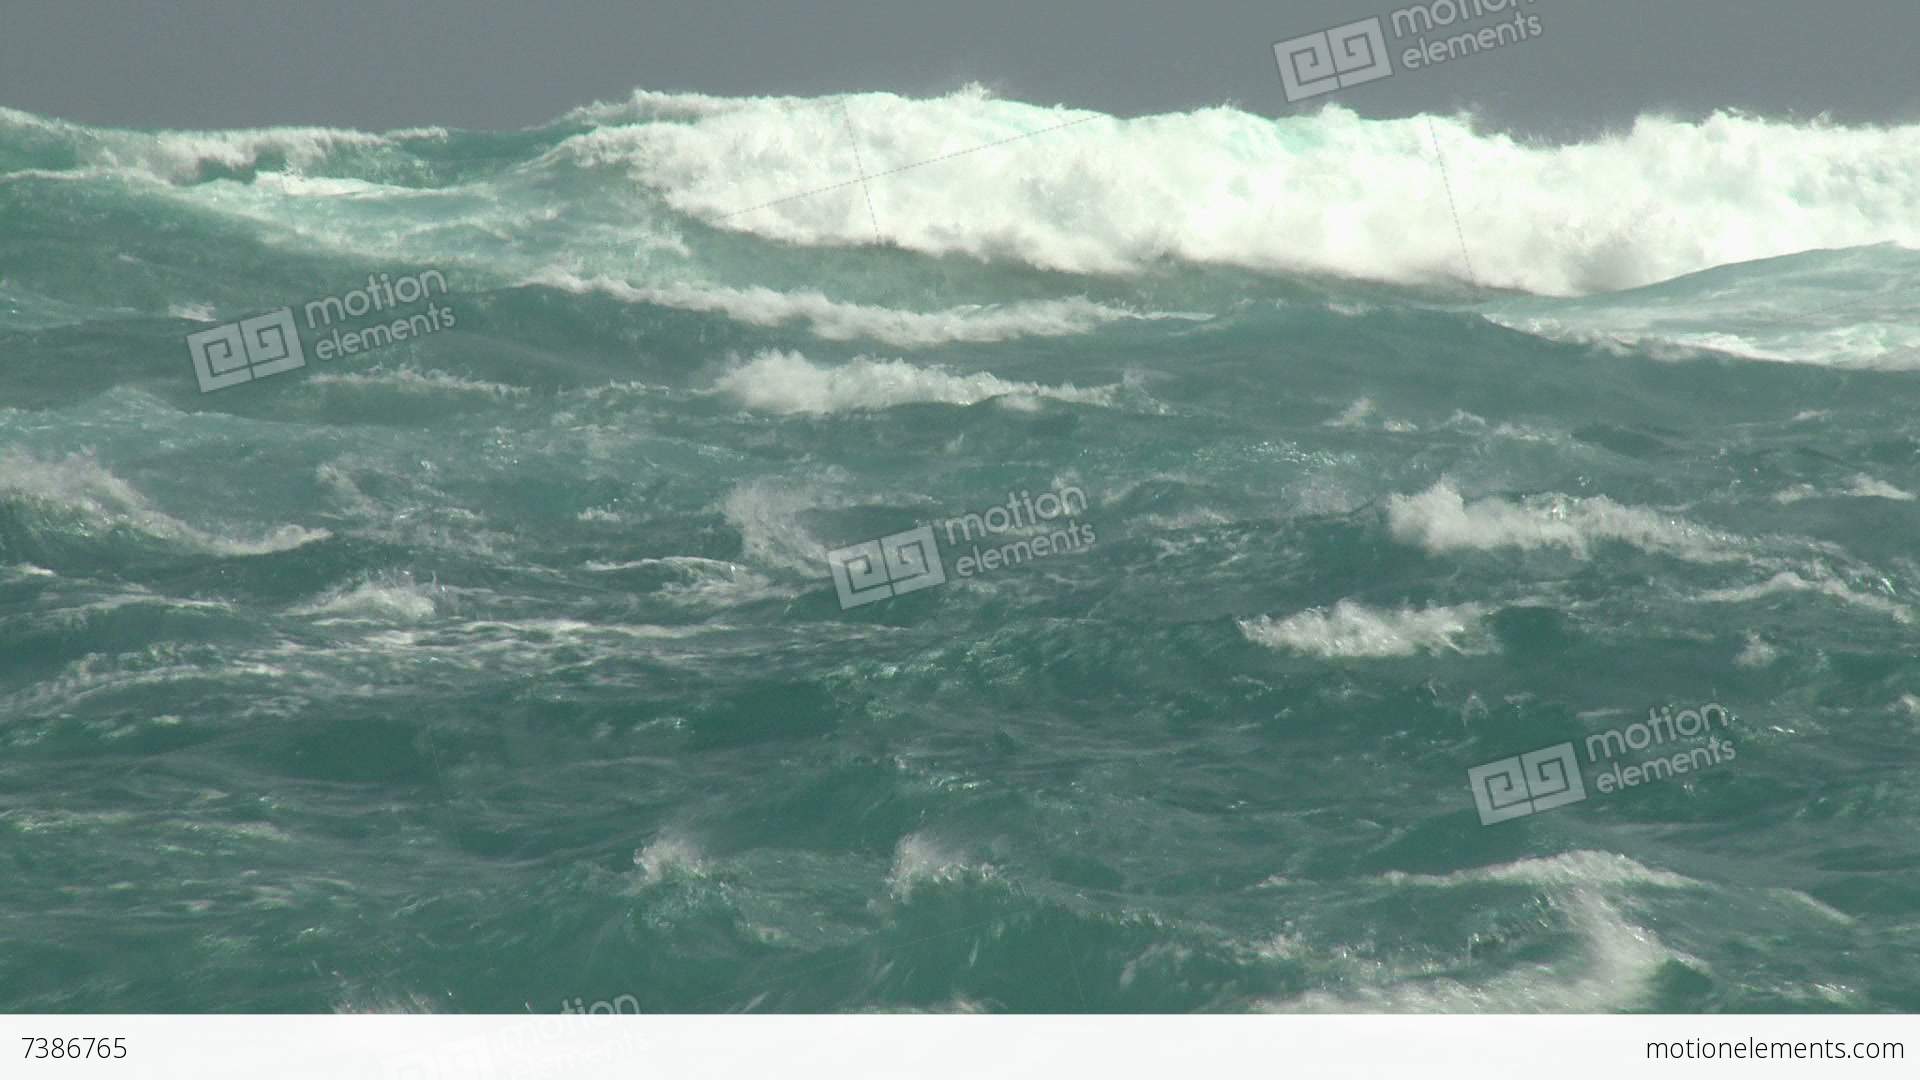 Stormy Seas As Hurricane Nears Coast Stock video footage | 7386765